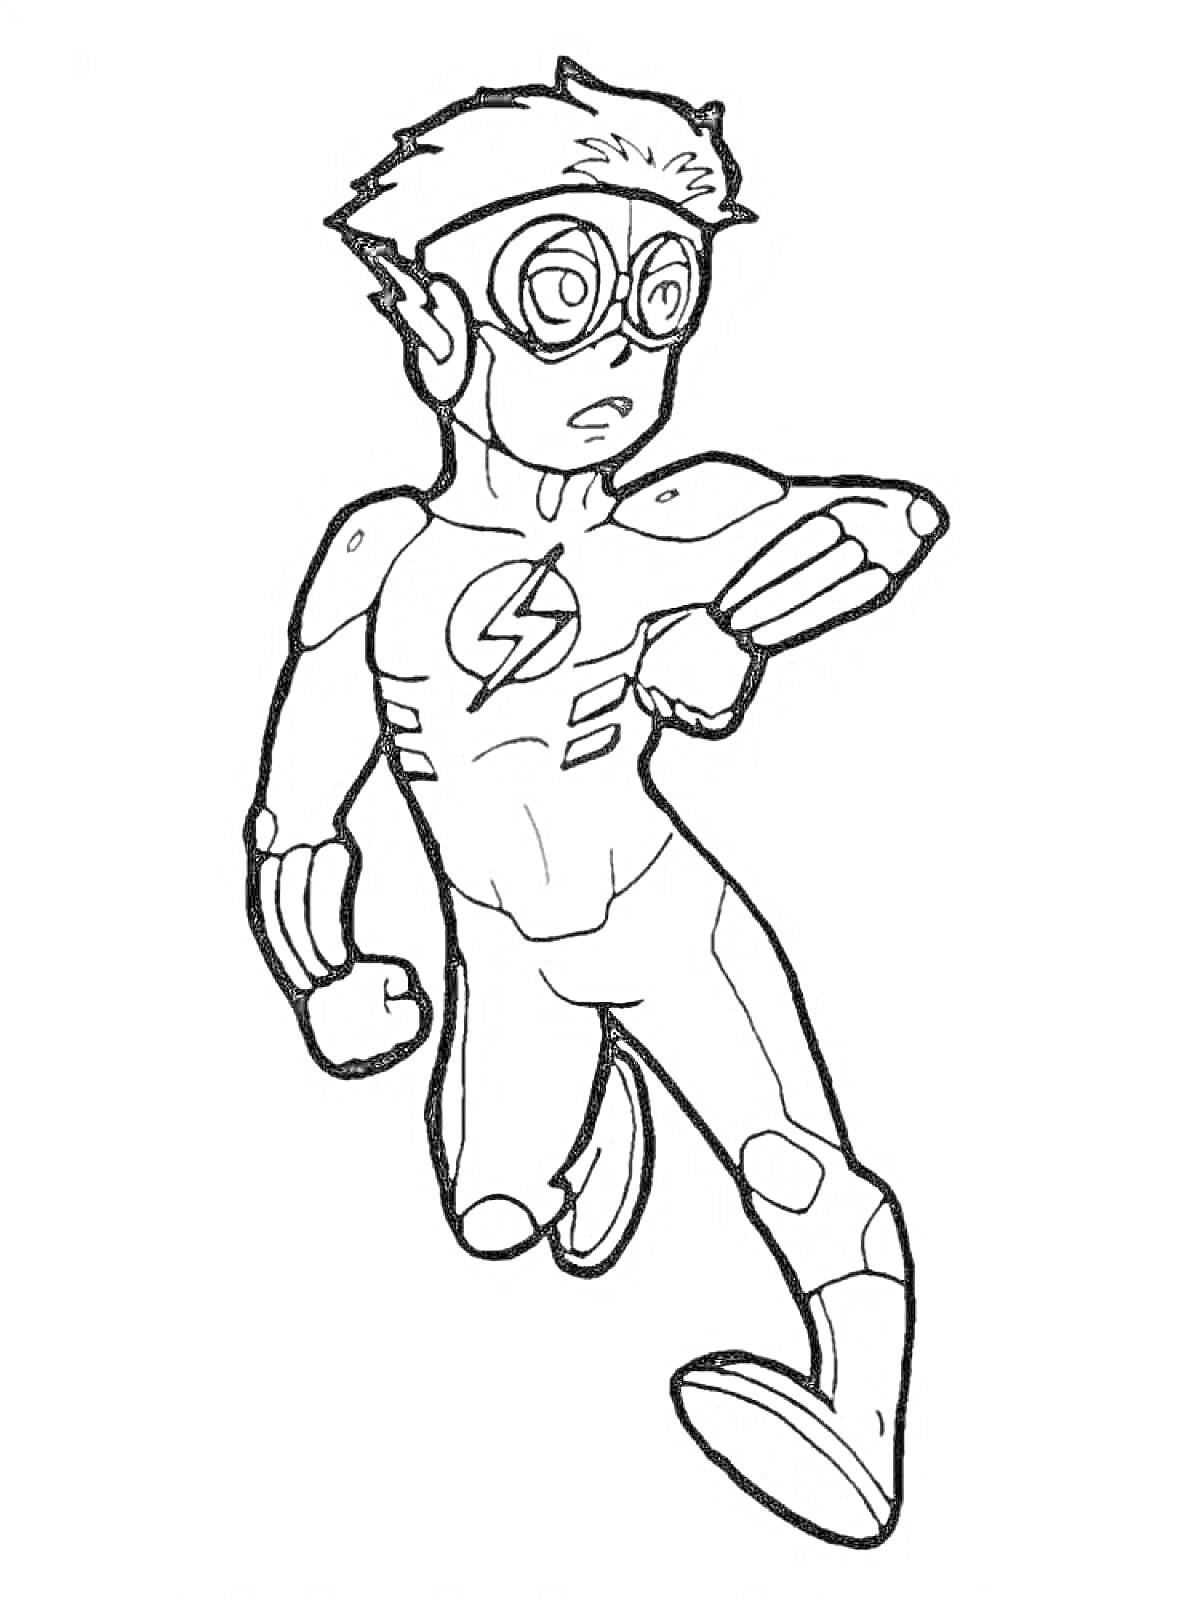 Раскраска супергерой в очках, костюме с логотипом молнии, бегущий персонаж